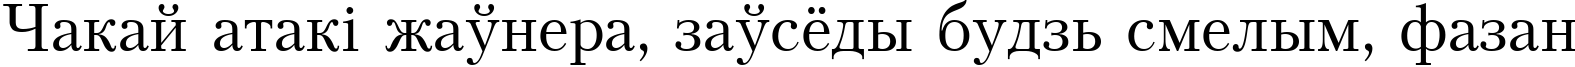 Пример написания шрифтом Petersburg Cyrillic текста на белорусском